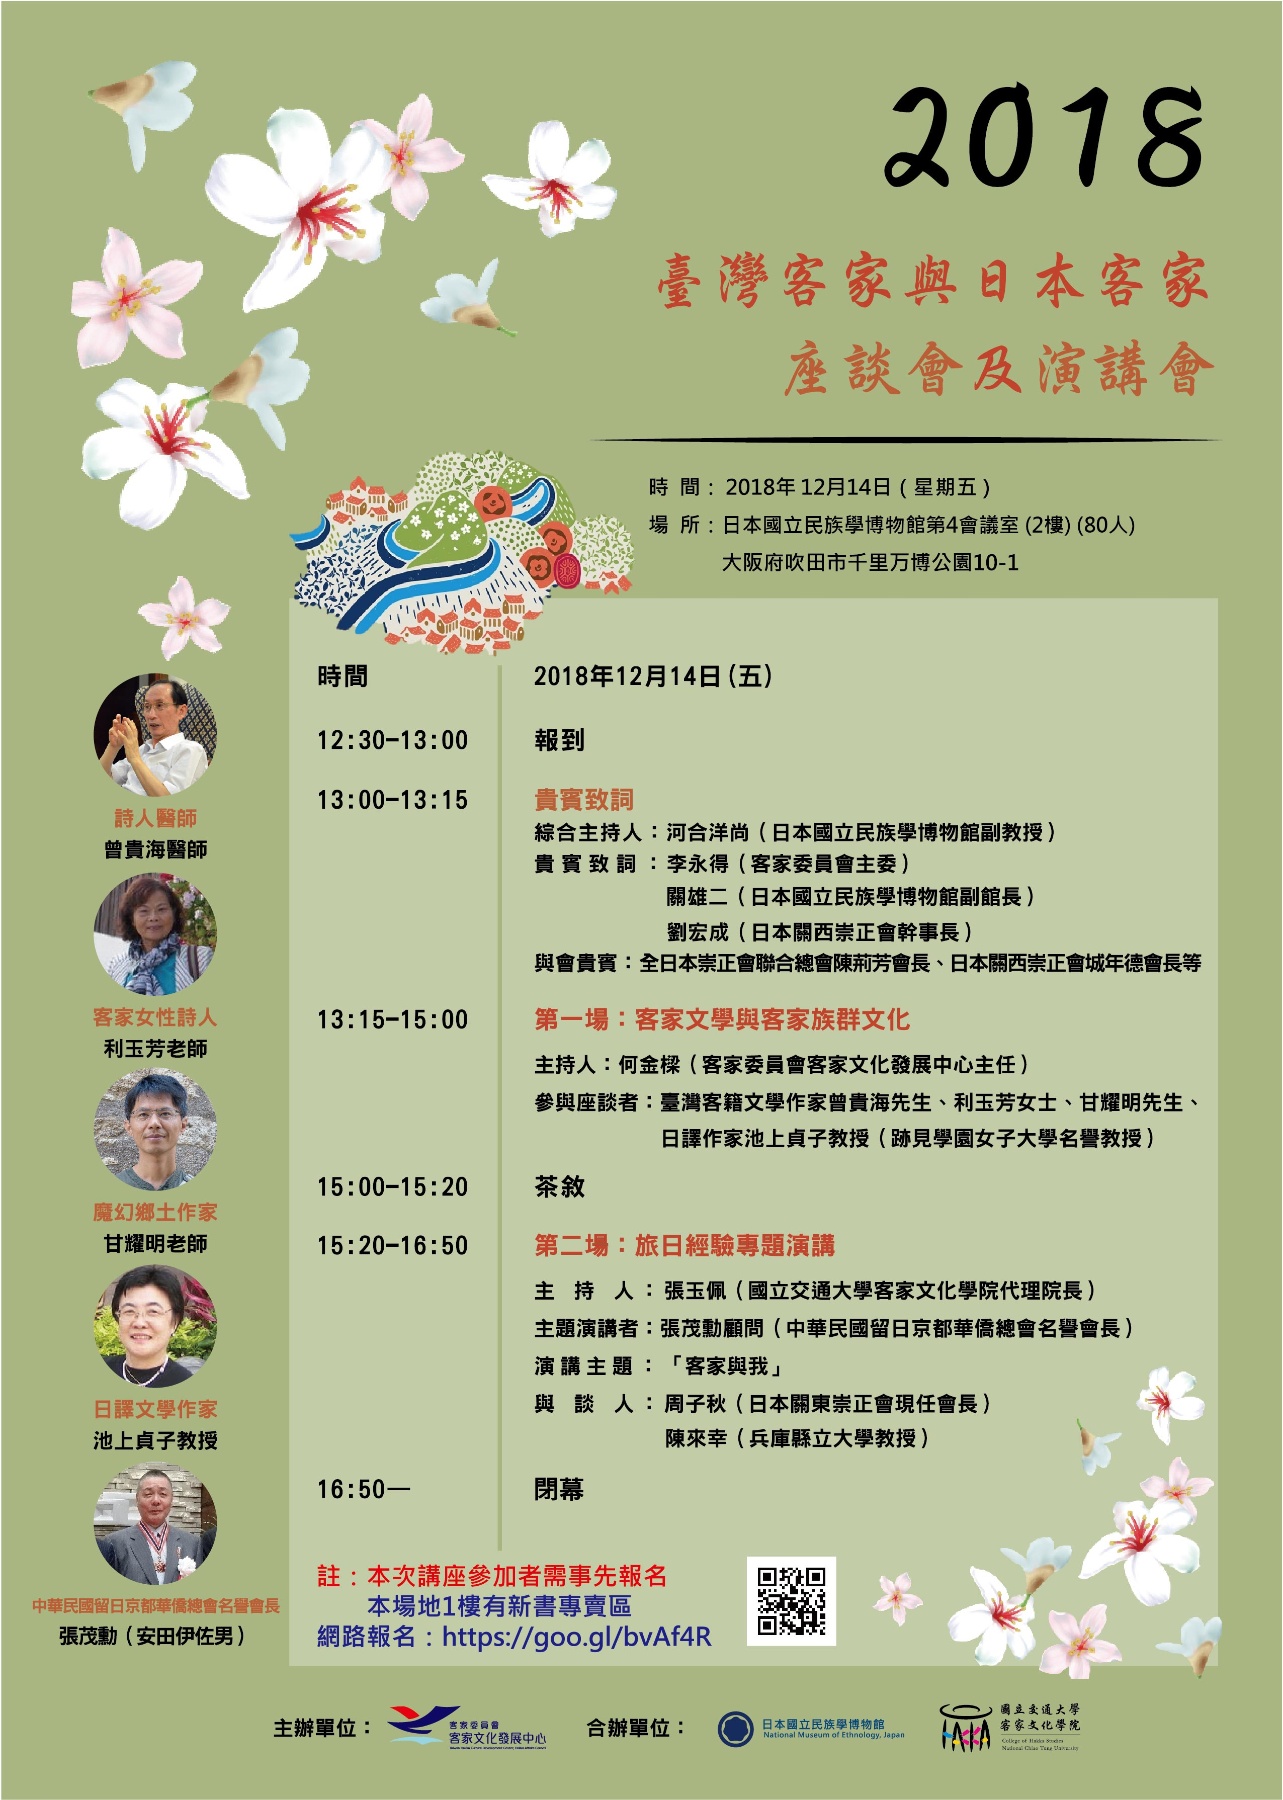 臺灣客家與日本客家座談會及演講會中文海報